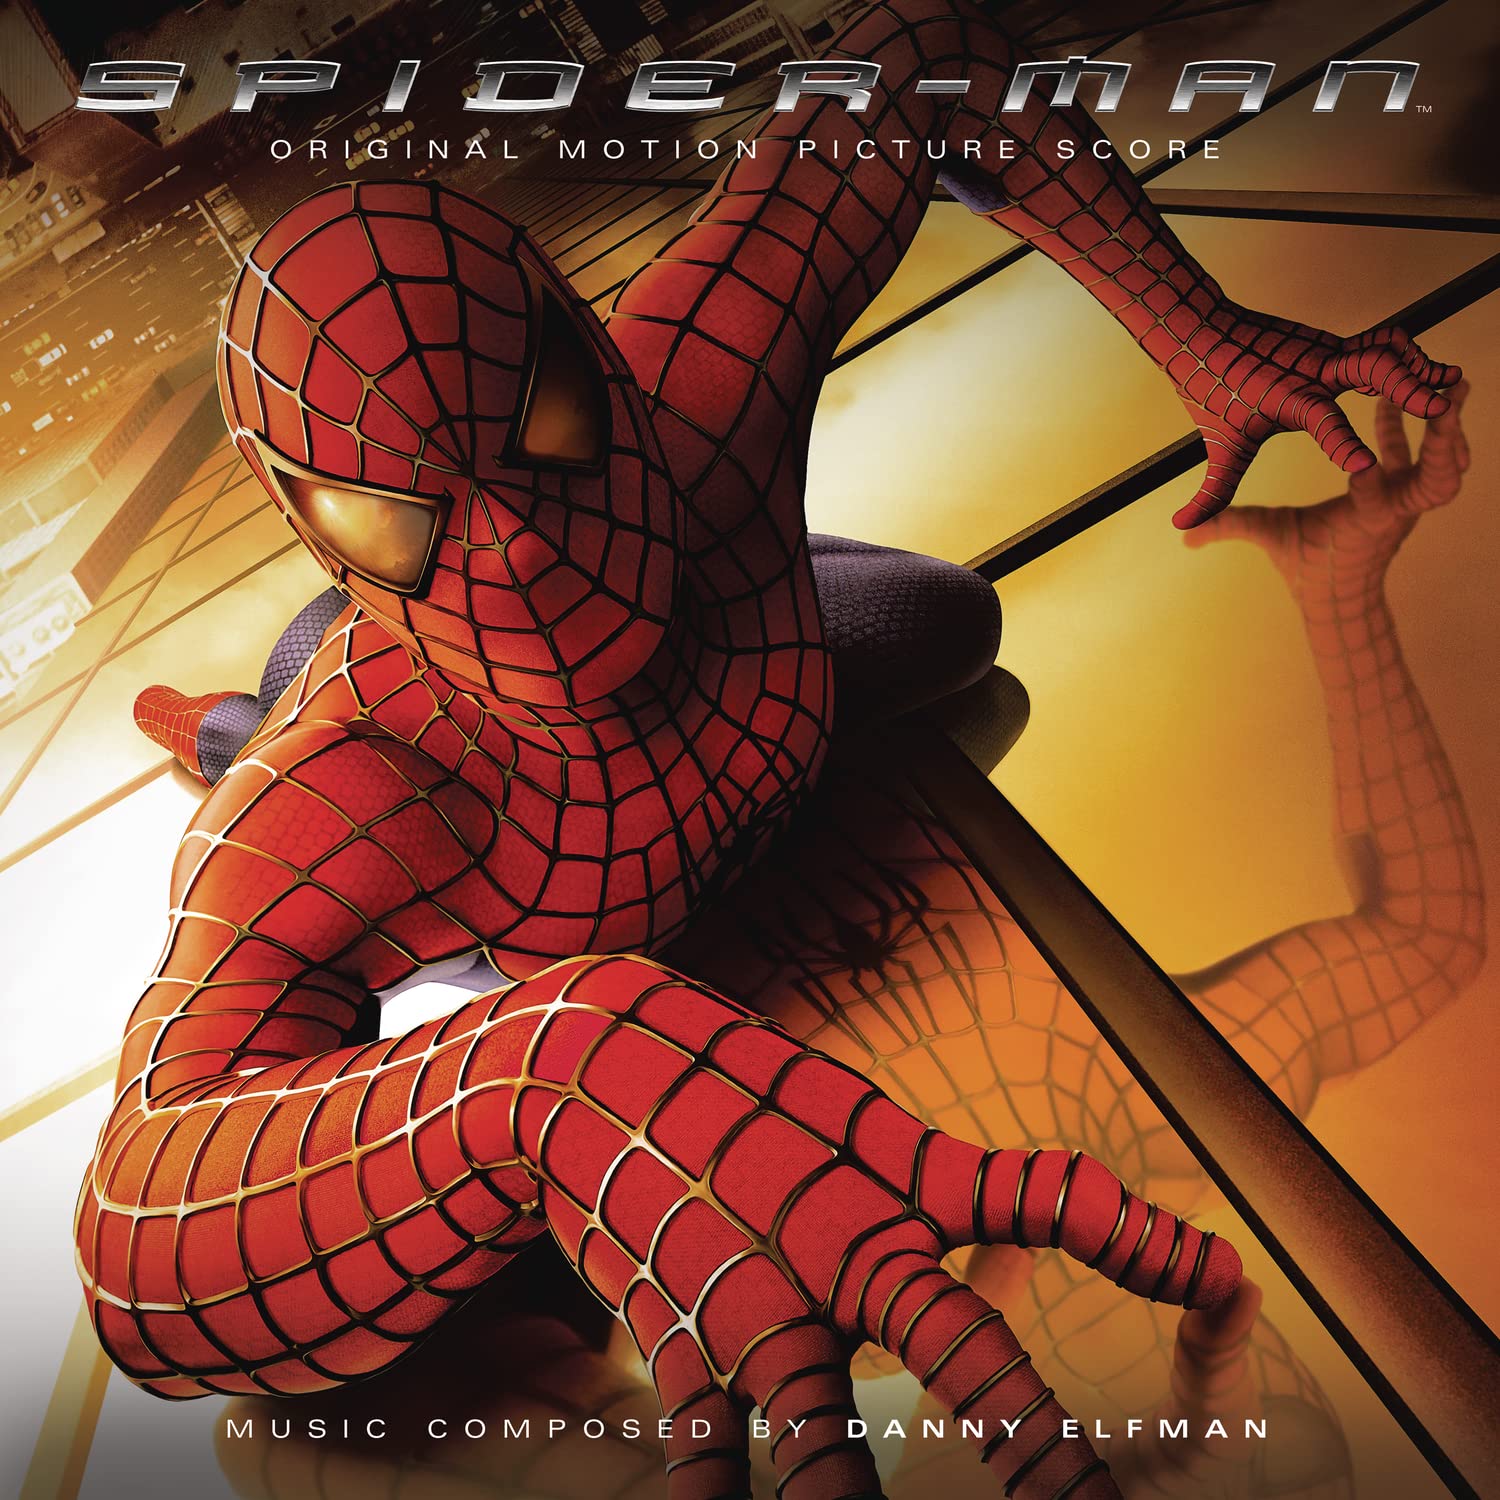 Саундтрек Sony Music Danny Elfman – Spider-Man (Original Motion Picture Score) (Limited Edition Silver Vinyl LP) абсолютное зло поиски сыновей сэма терри м